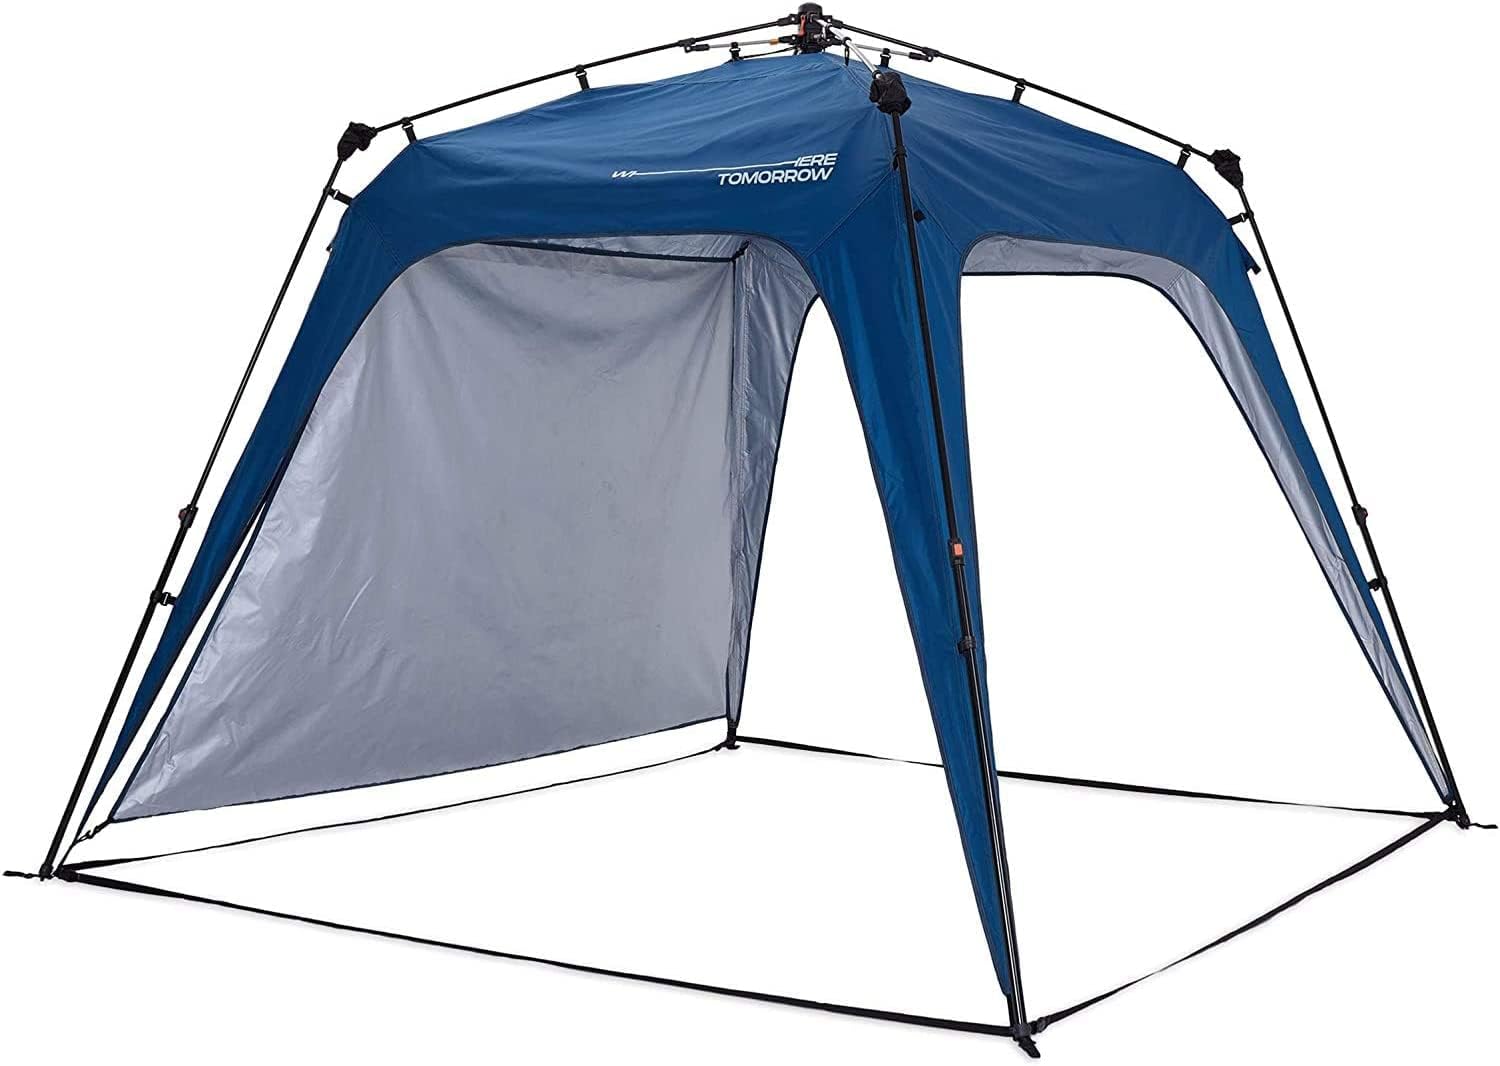 lumaland gazebo tent blue polyester gazebo waterproof